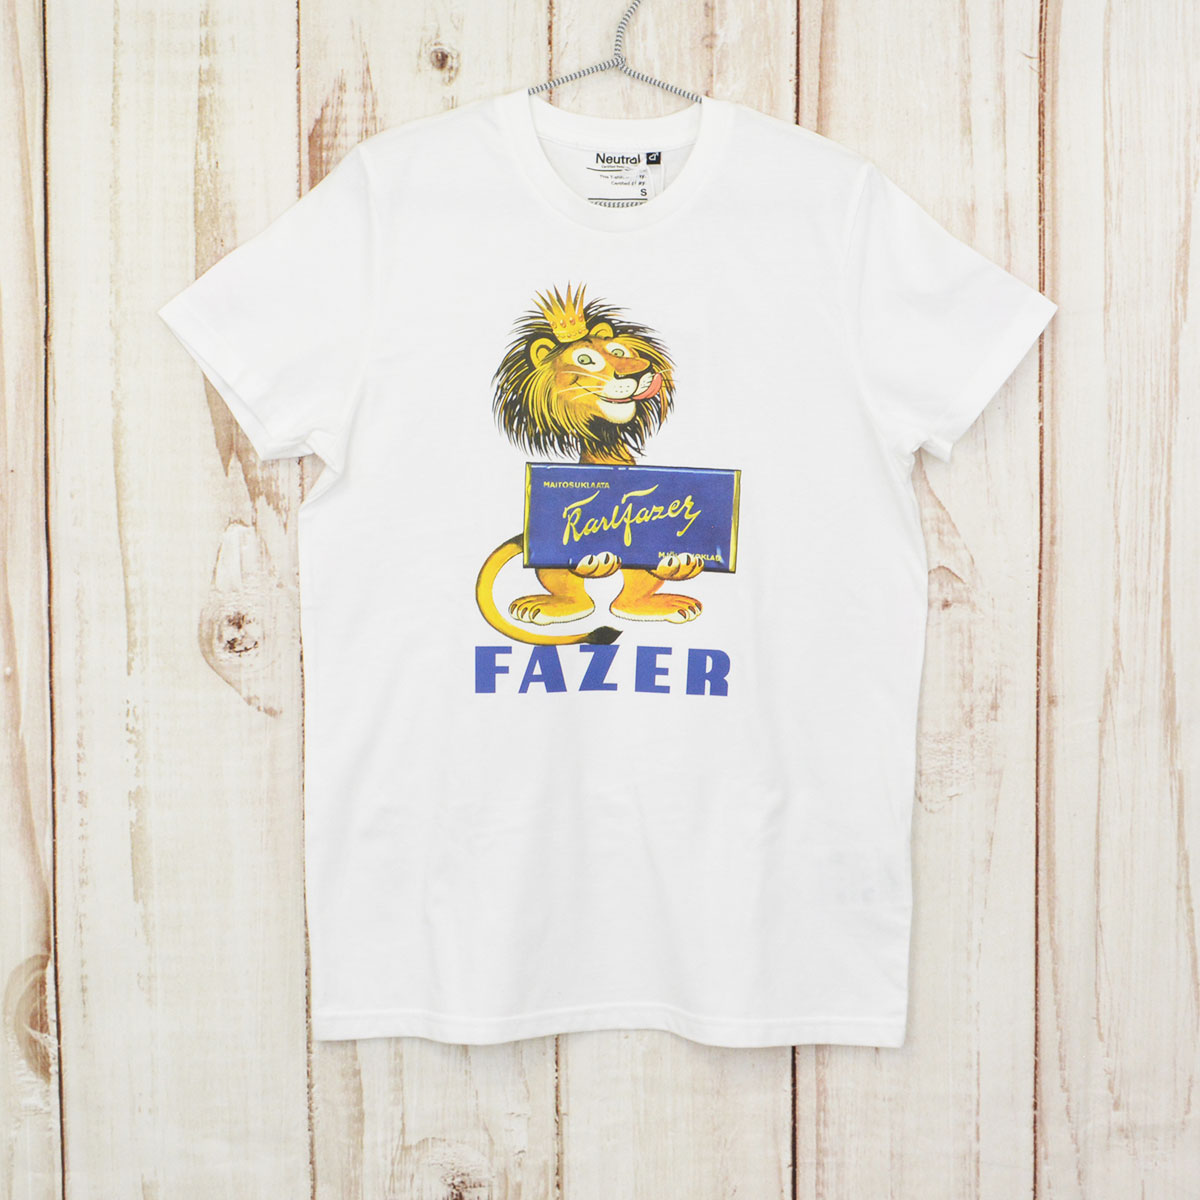 Fazer ファッツェル KarlFazer ライオン Tシャツ ( Sサイズ )